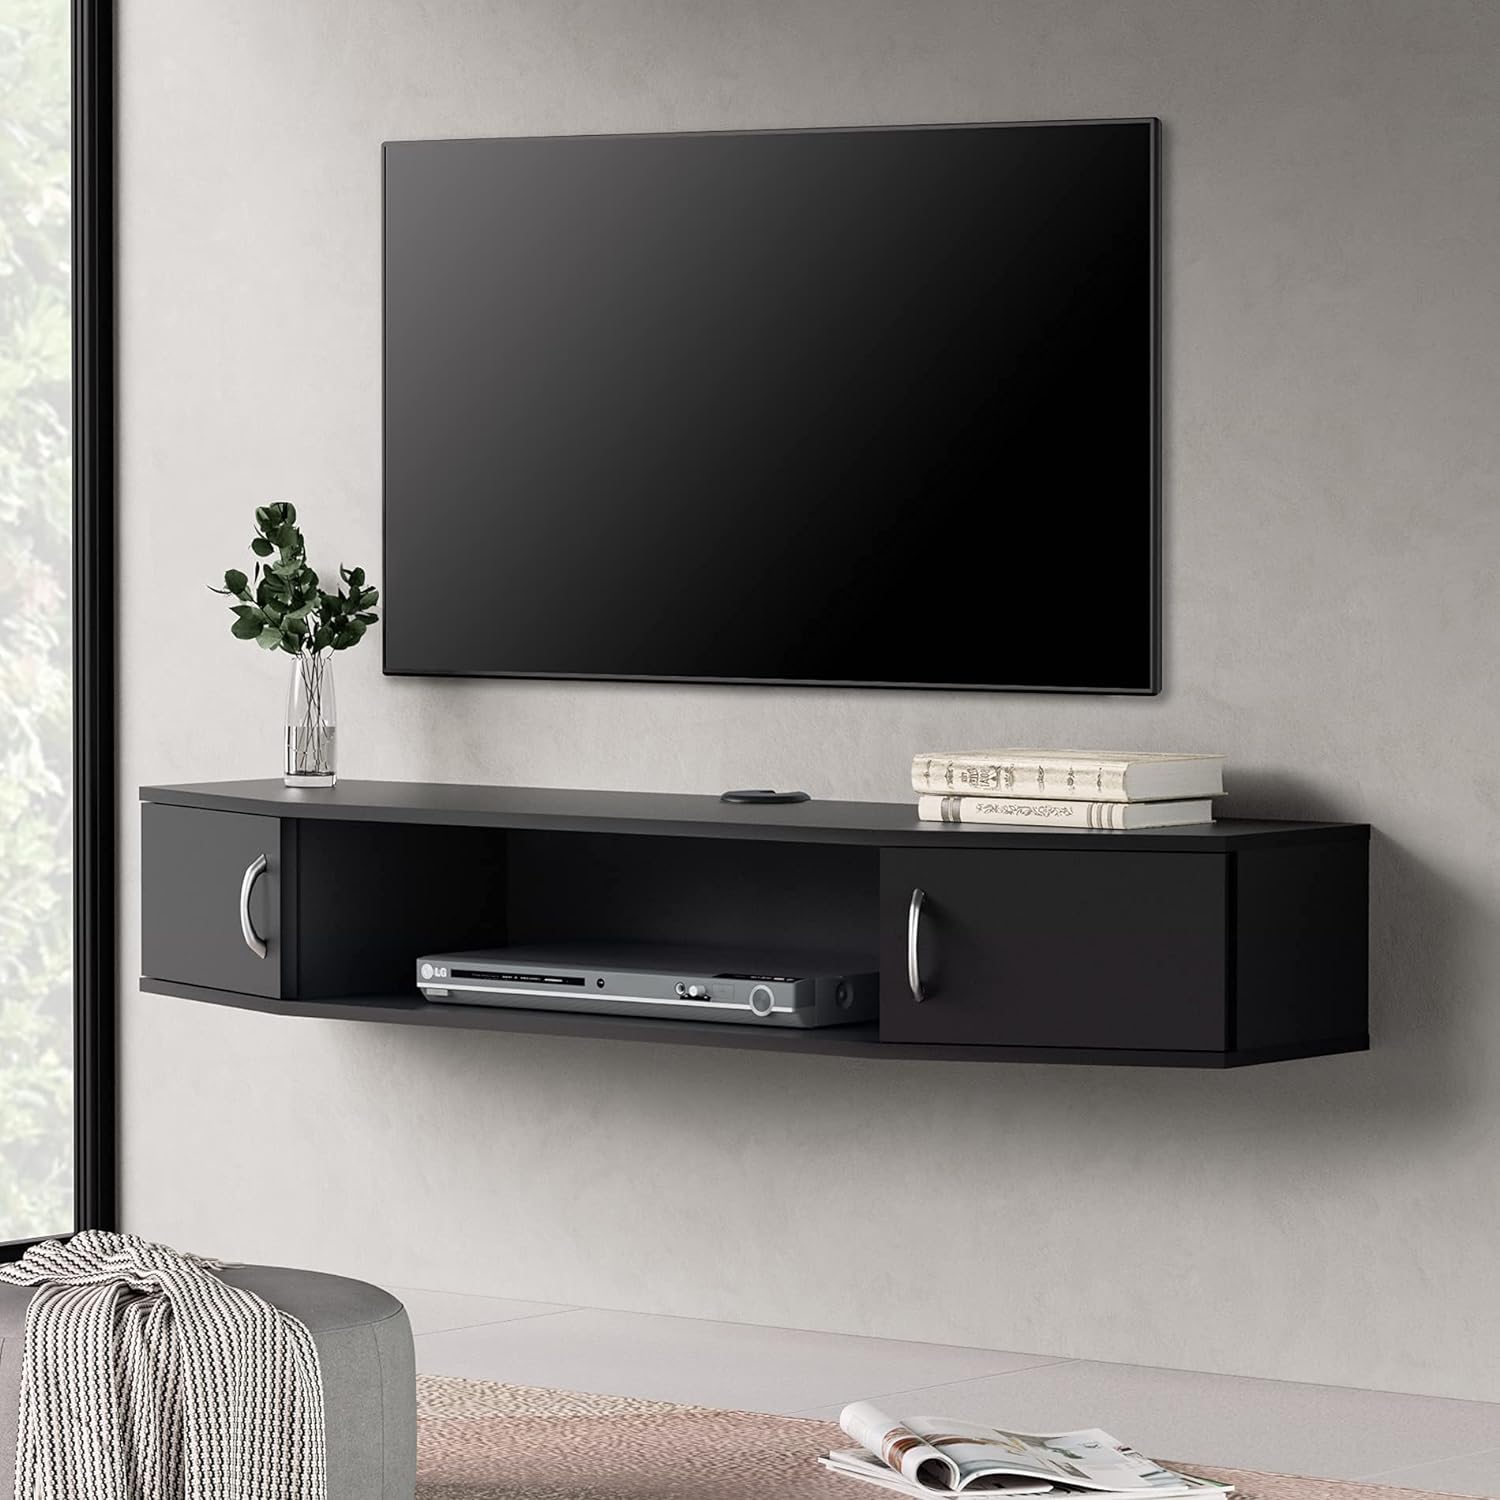 Mueble de tv, será la superficie perfecta para colocar tu televisión